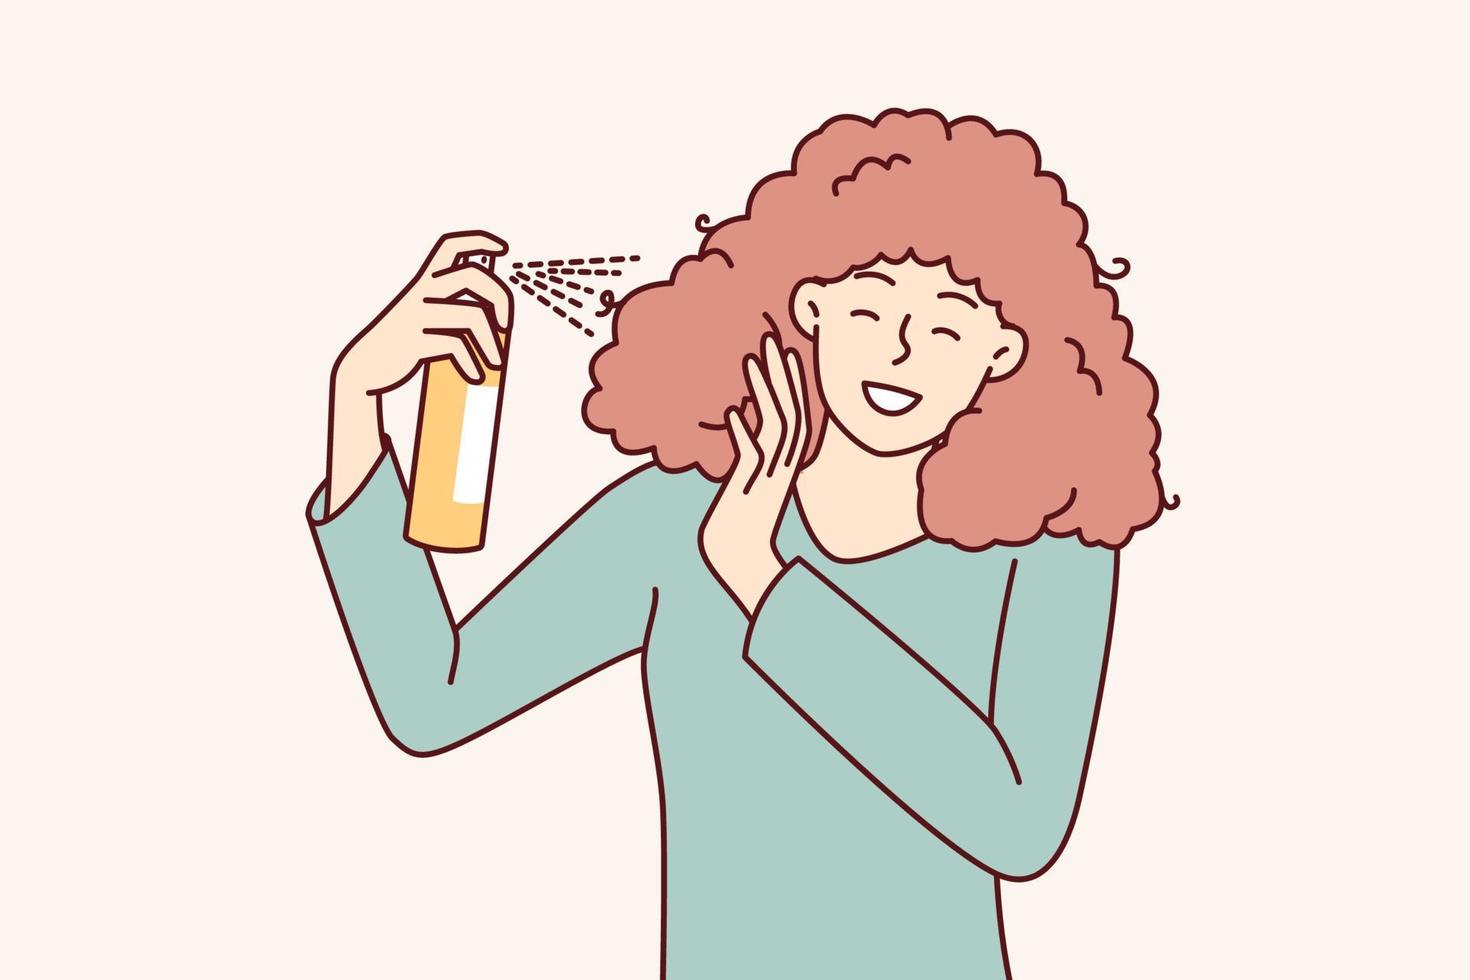 kvinna användningar spray till skapa Häftigt frisyr innan gående till fest eller gala middag. flicka är engagerad i oberoende hår vård, önskar till ha skön frisyr tack till kosmetisk Produkter vektor